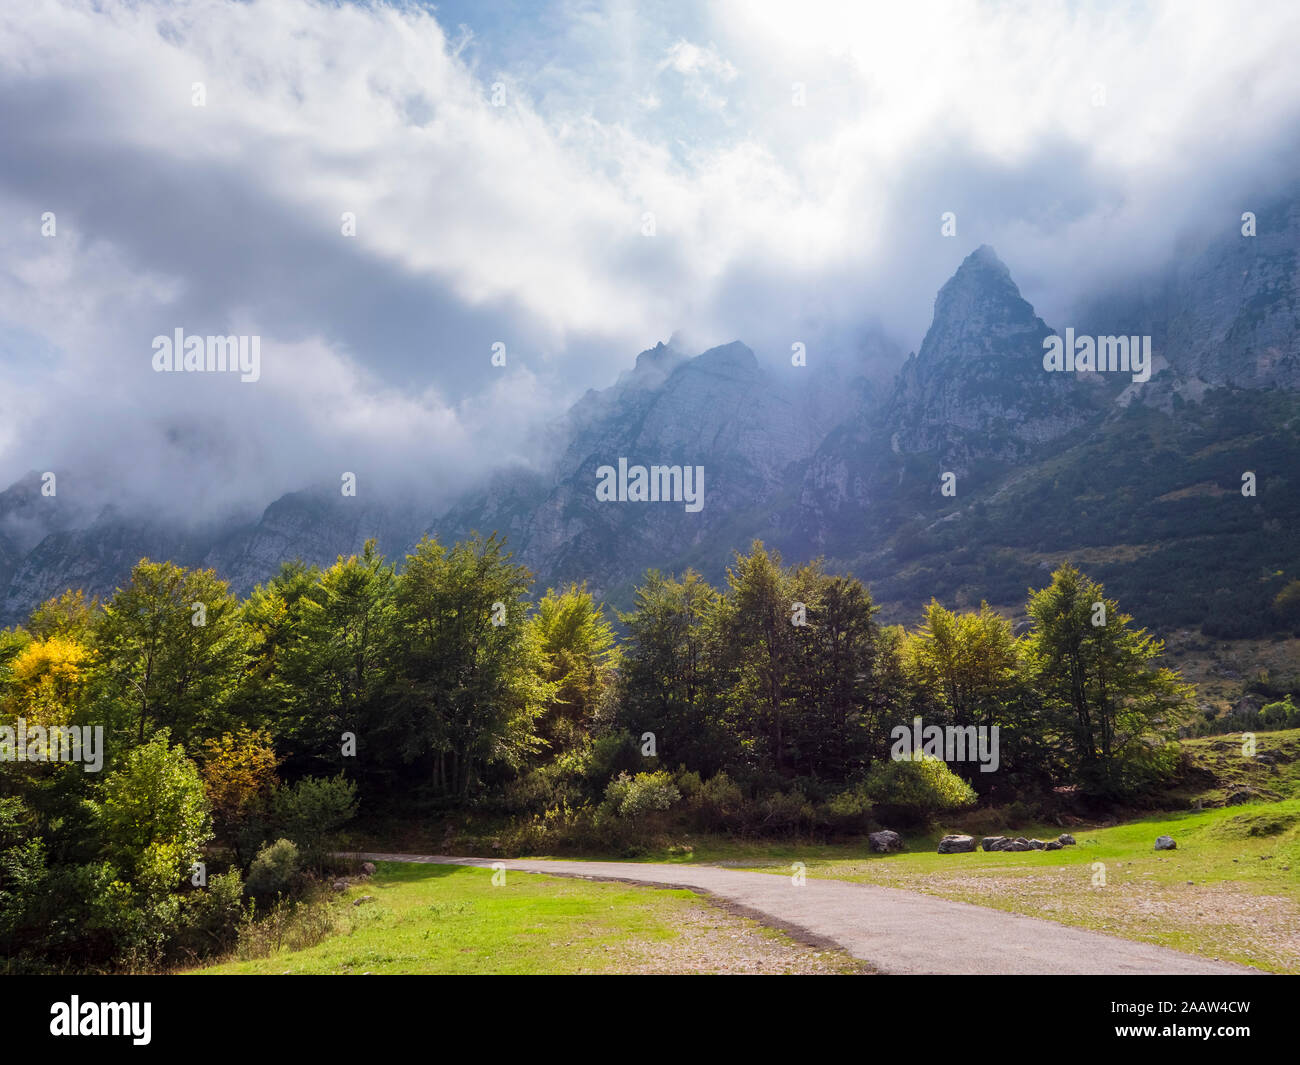 Foggy mountains at Recoaro Terme, Veneto, Italy Stock Photo